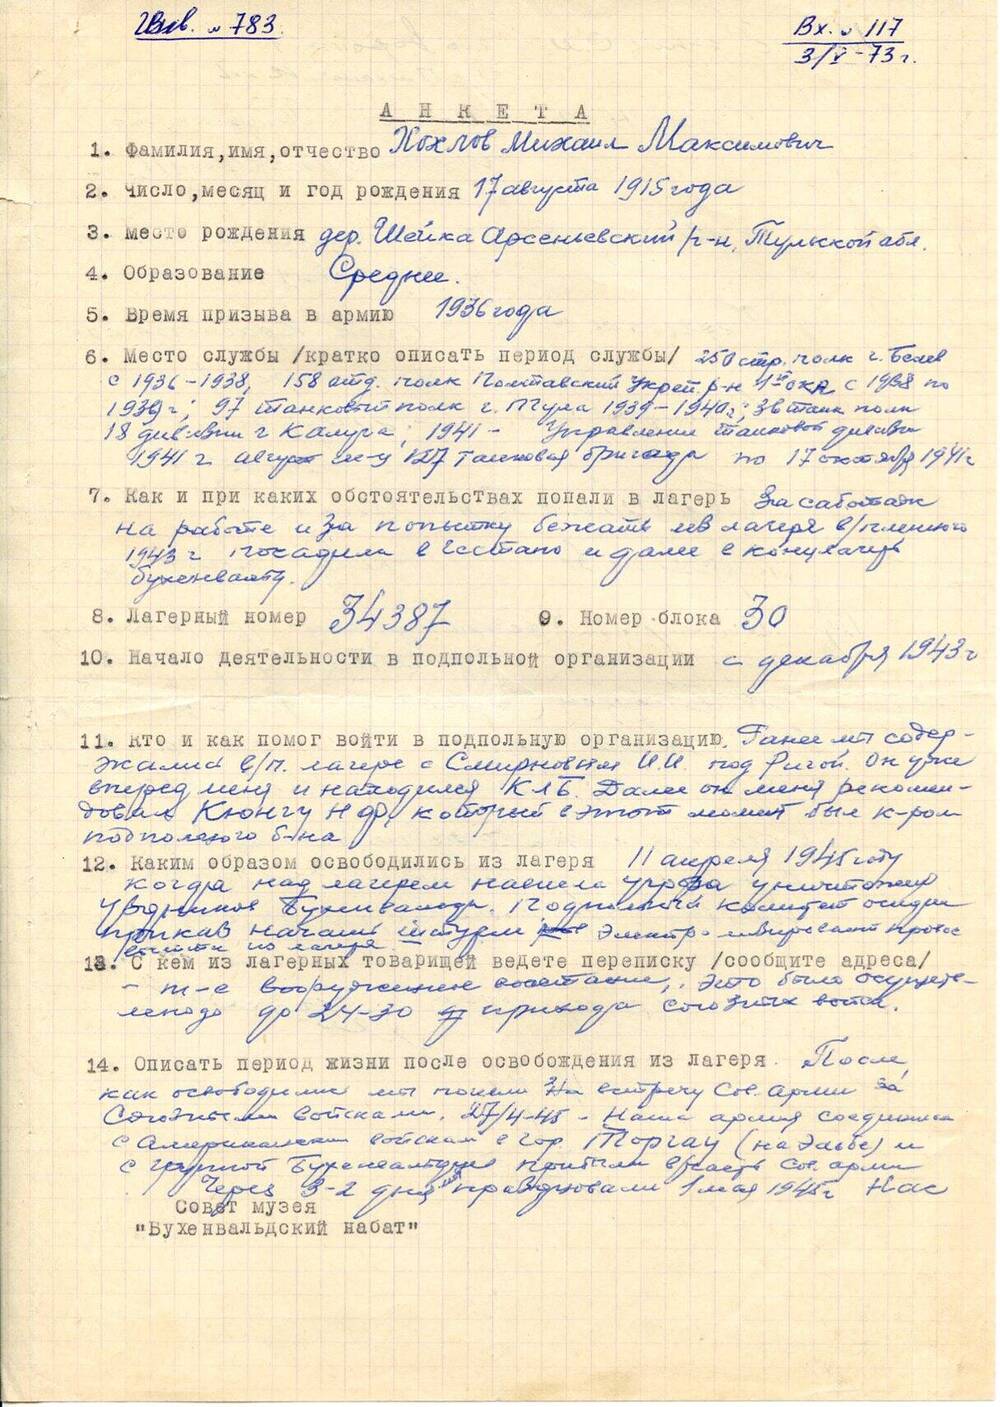 Анкета Хохлова Михаила Максимовича, бывшего узника концлагеря Бухенвальд, с краткими биографическими данными.